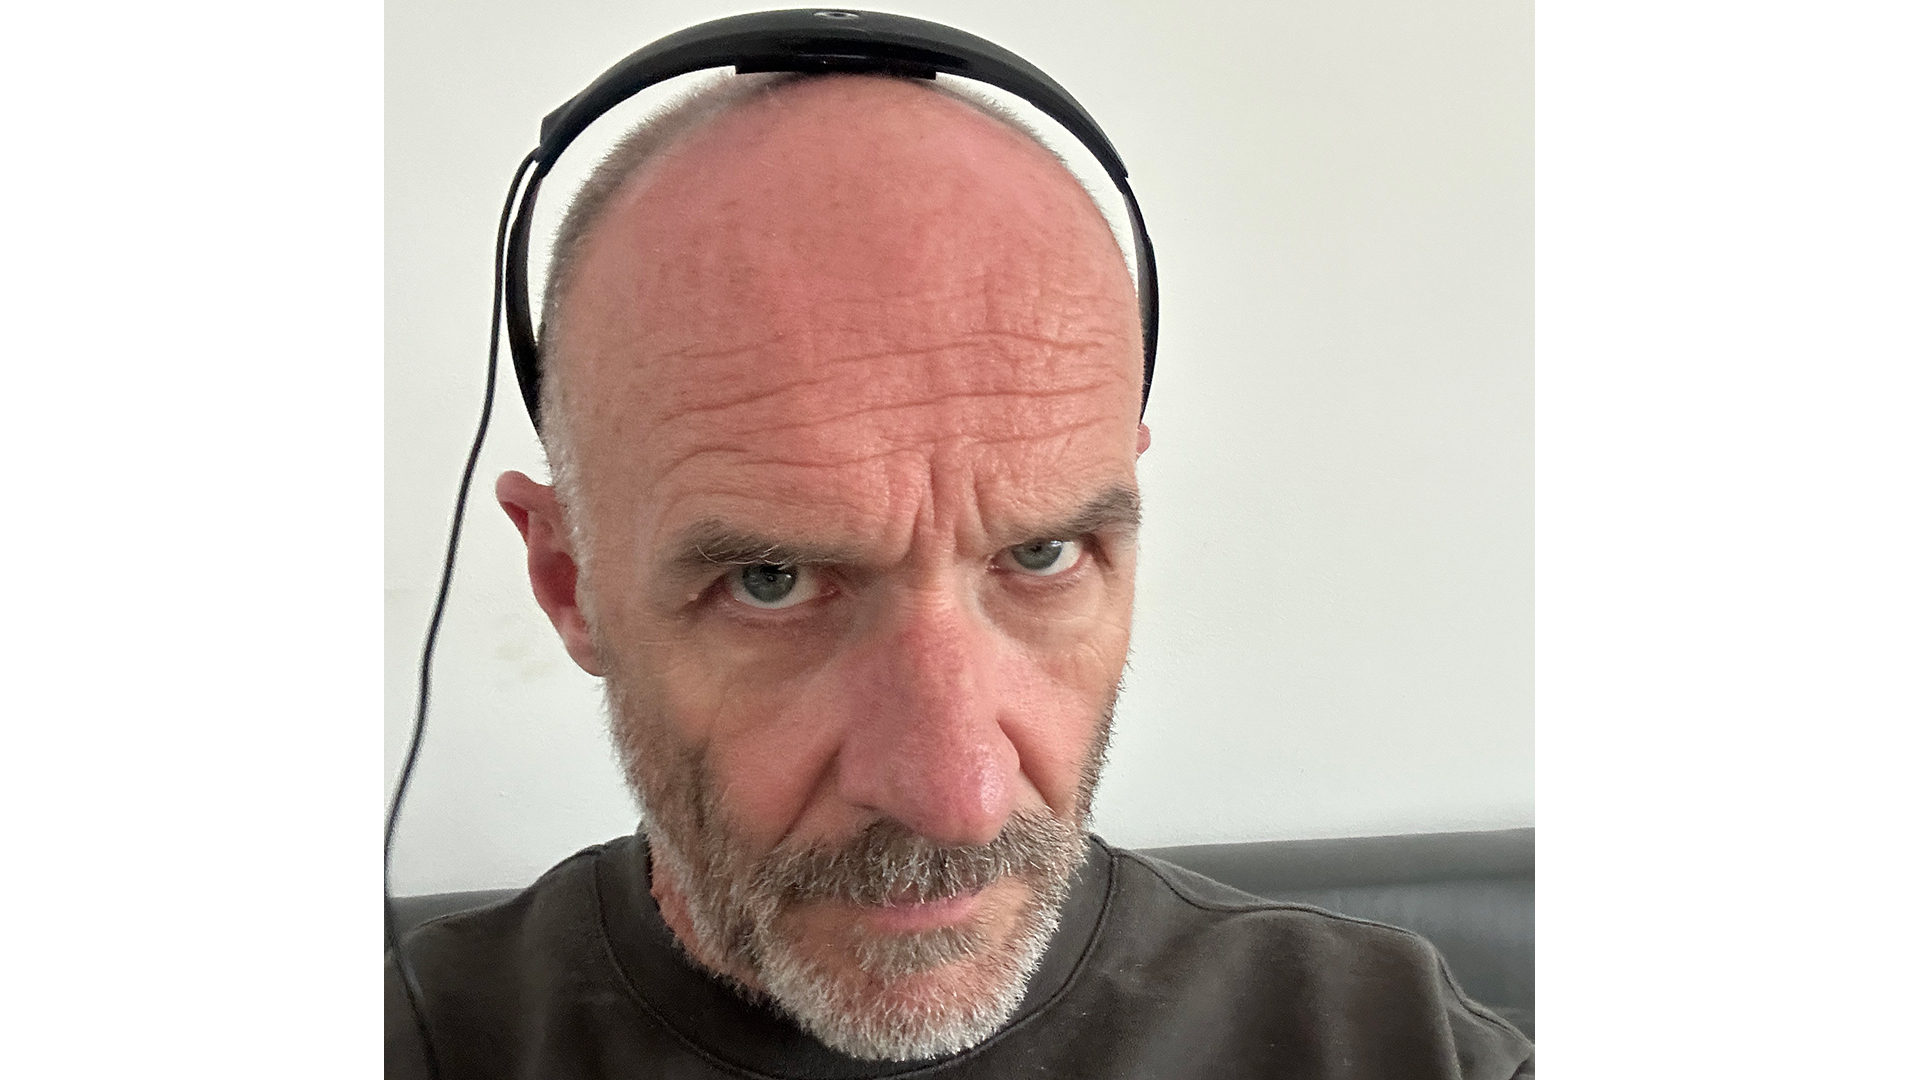 The Bose soundbar's Adaptiq headset mic worn by a man who looks unamused